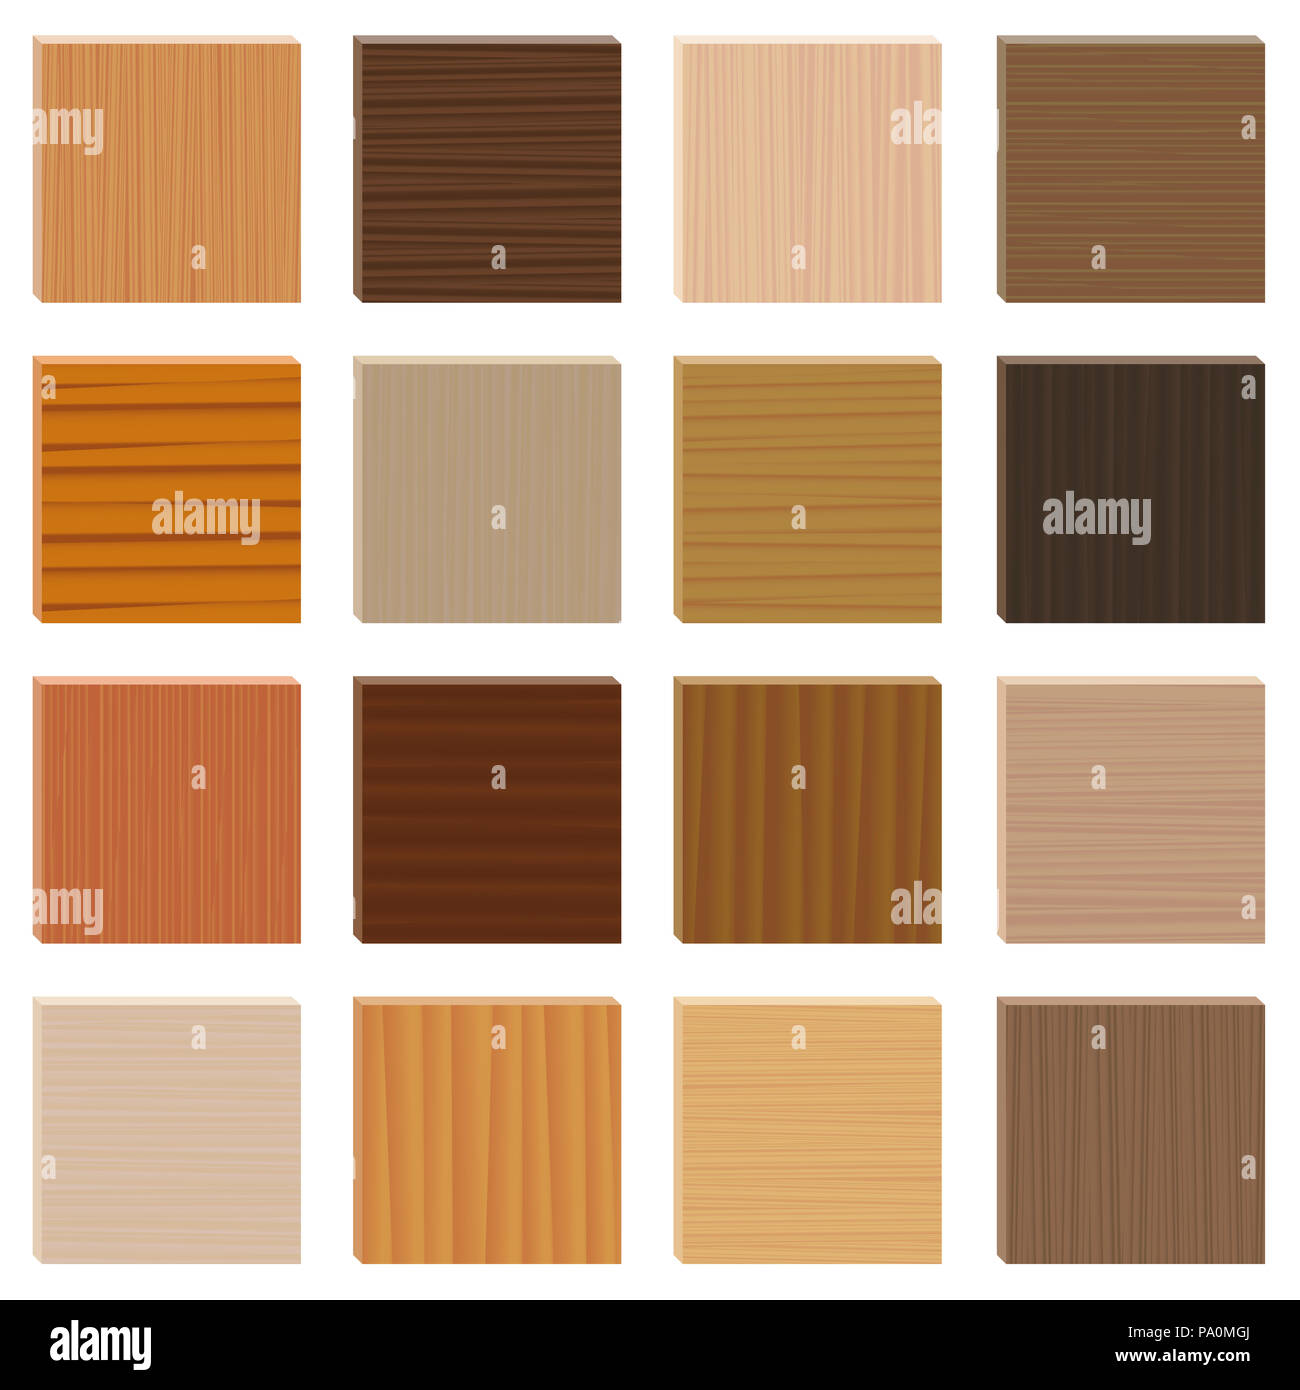 Las muestras de madera. Variados tipos parquetry set. Placas de madera con diferentes colores, esmaltes, texturas de diversas especies de árboles para elegir. Foto de stock